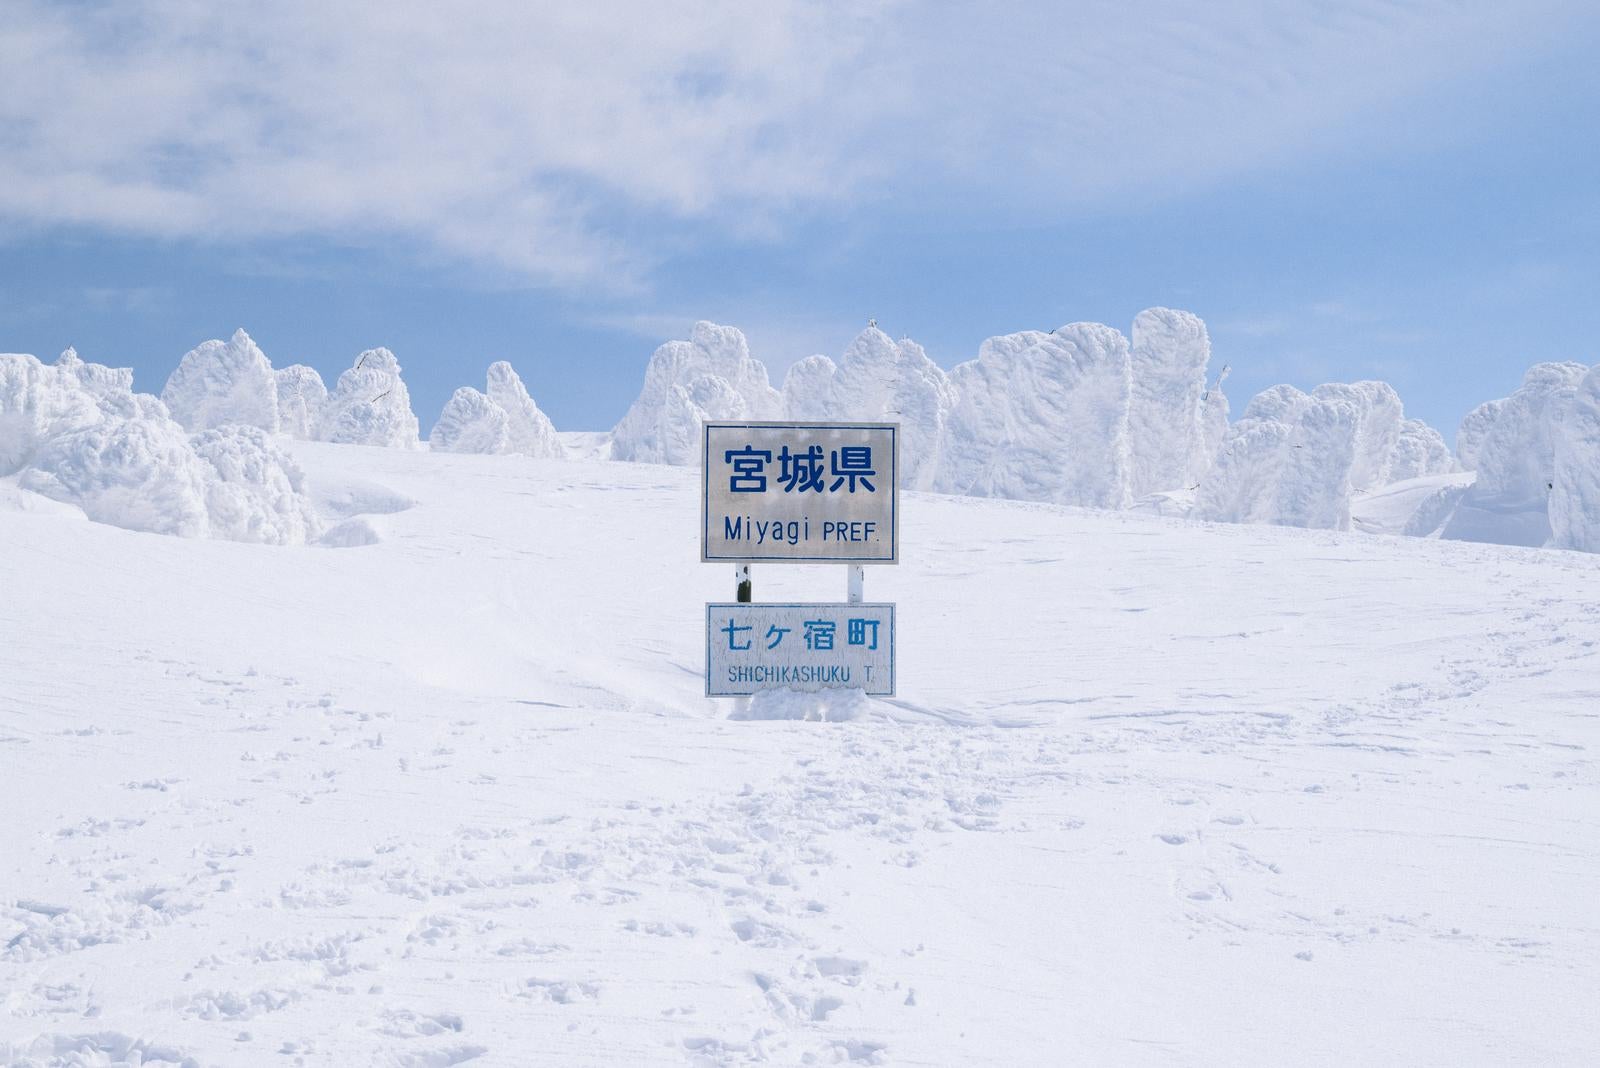 「雪に覆われた宮城県県境の看板と足跡」の写真